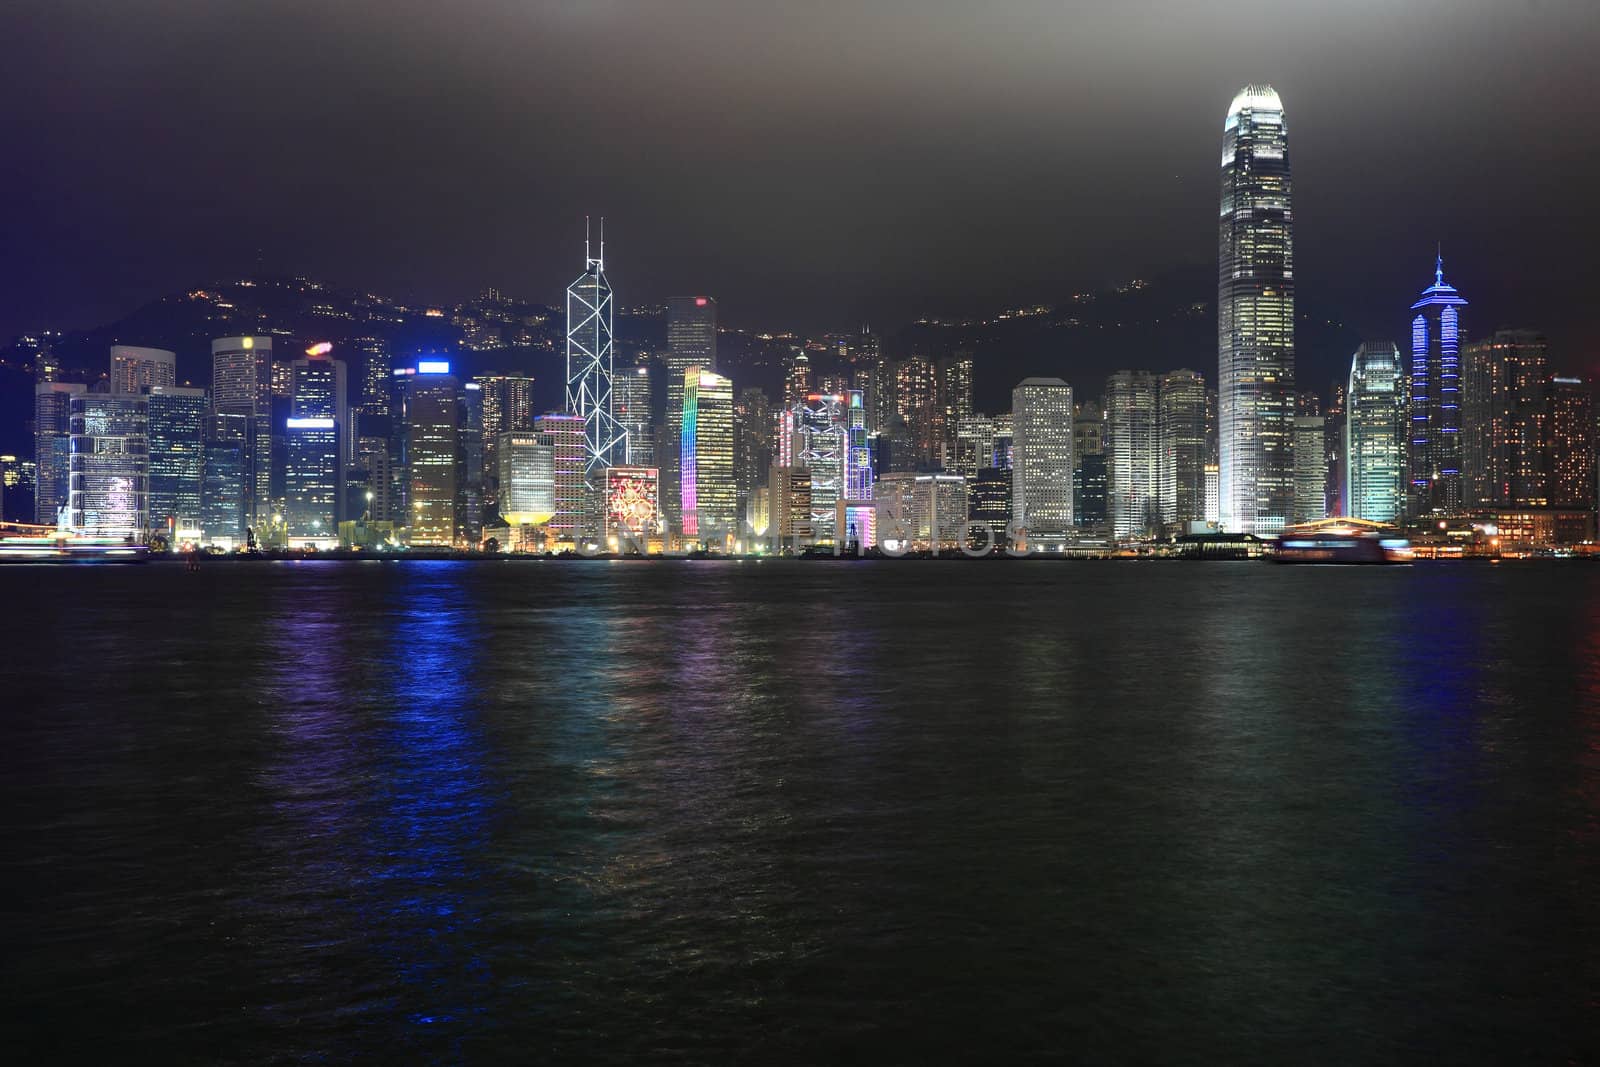 Hong Kong night view with sea